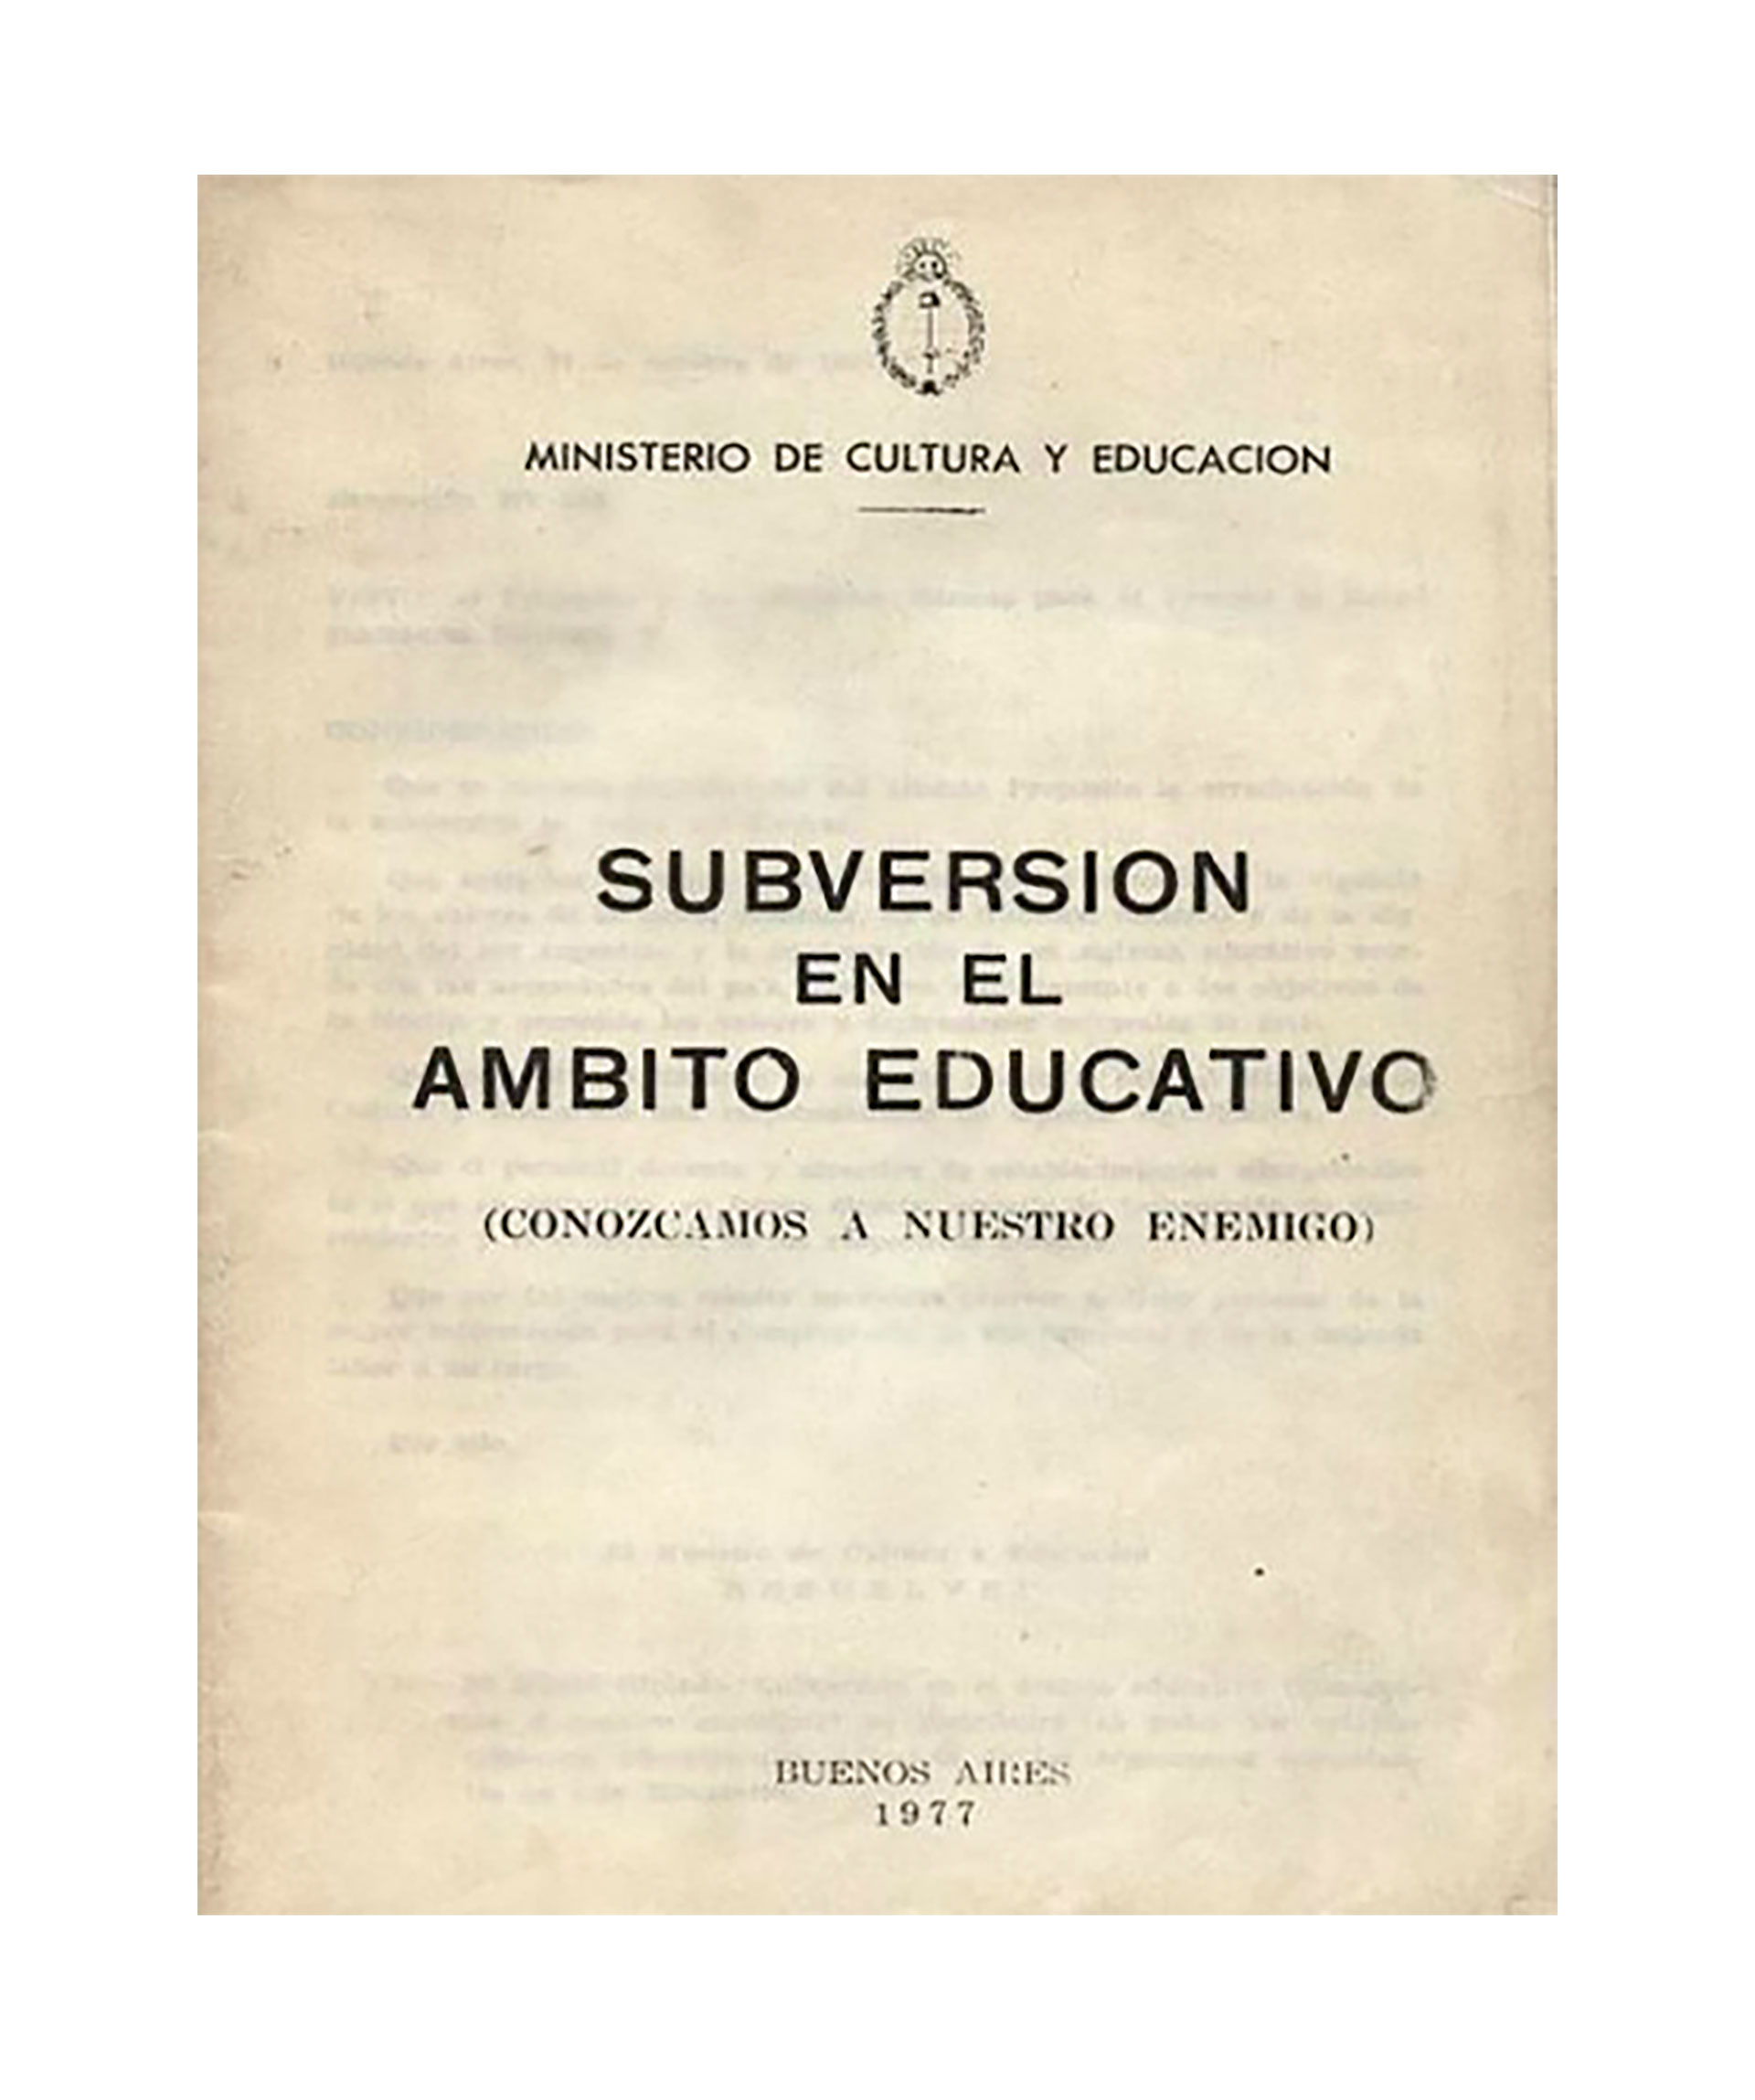 La carátula del manual antisubversivo que se repartió en las escuelas en 1977